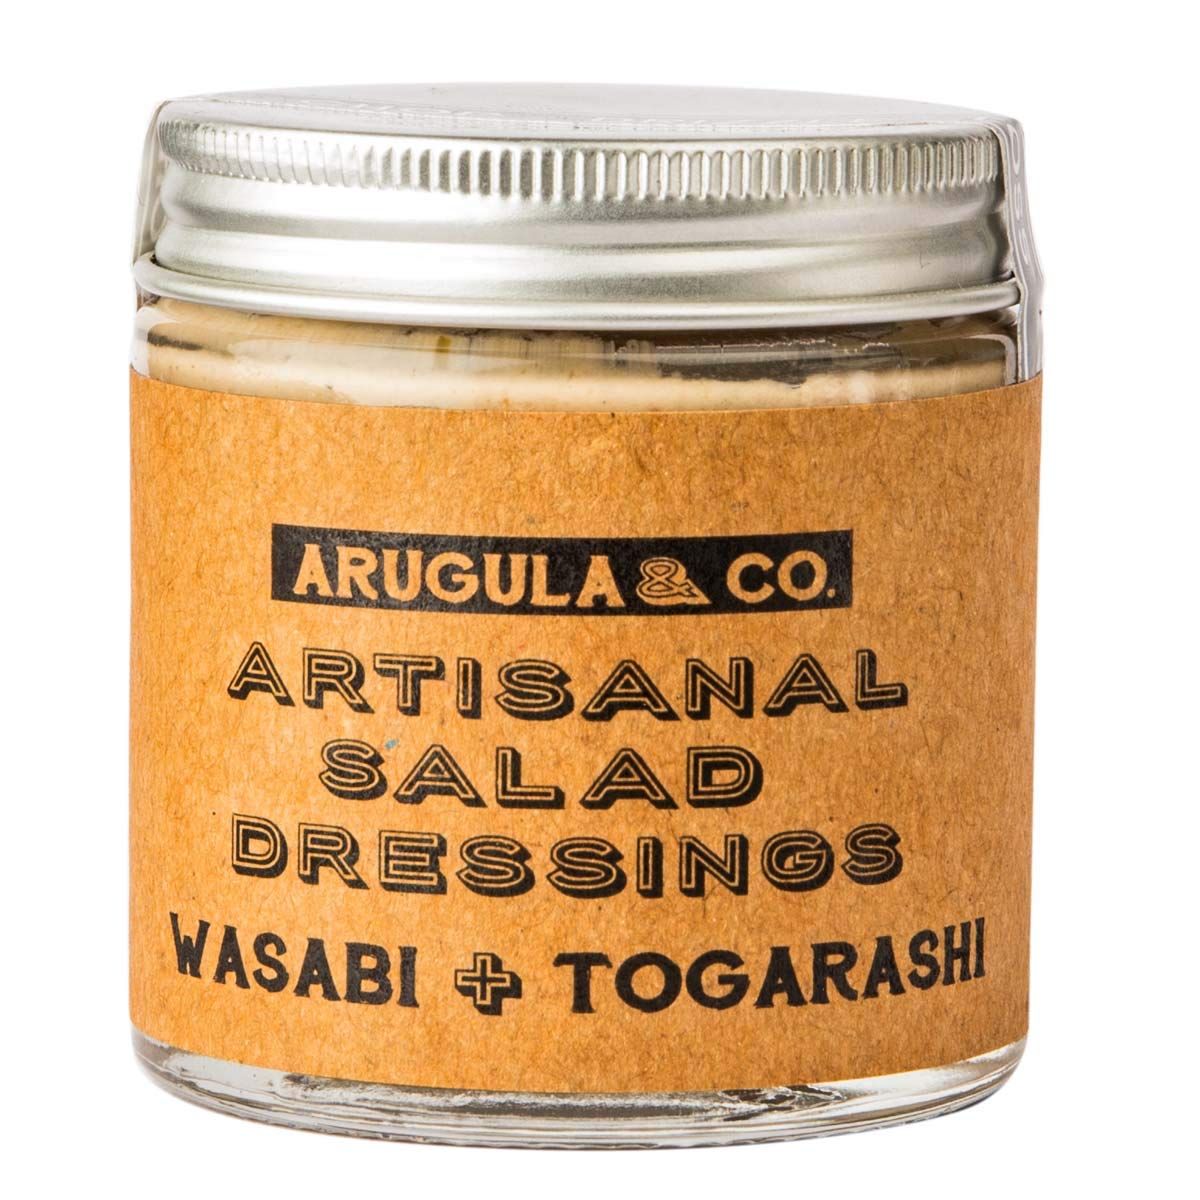 Arugula & Co. Wasabi Togarashi Salad Dressing Image